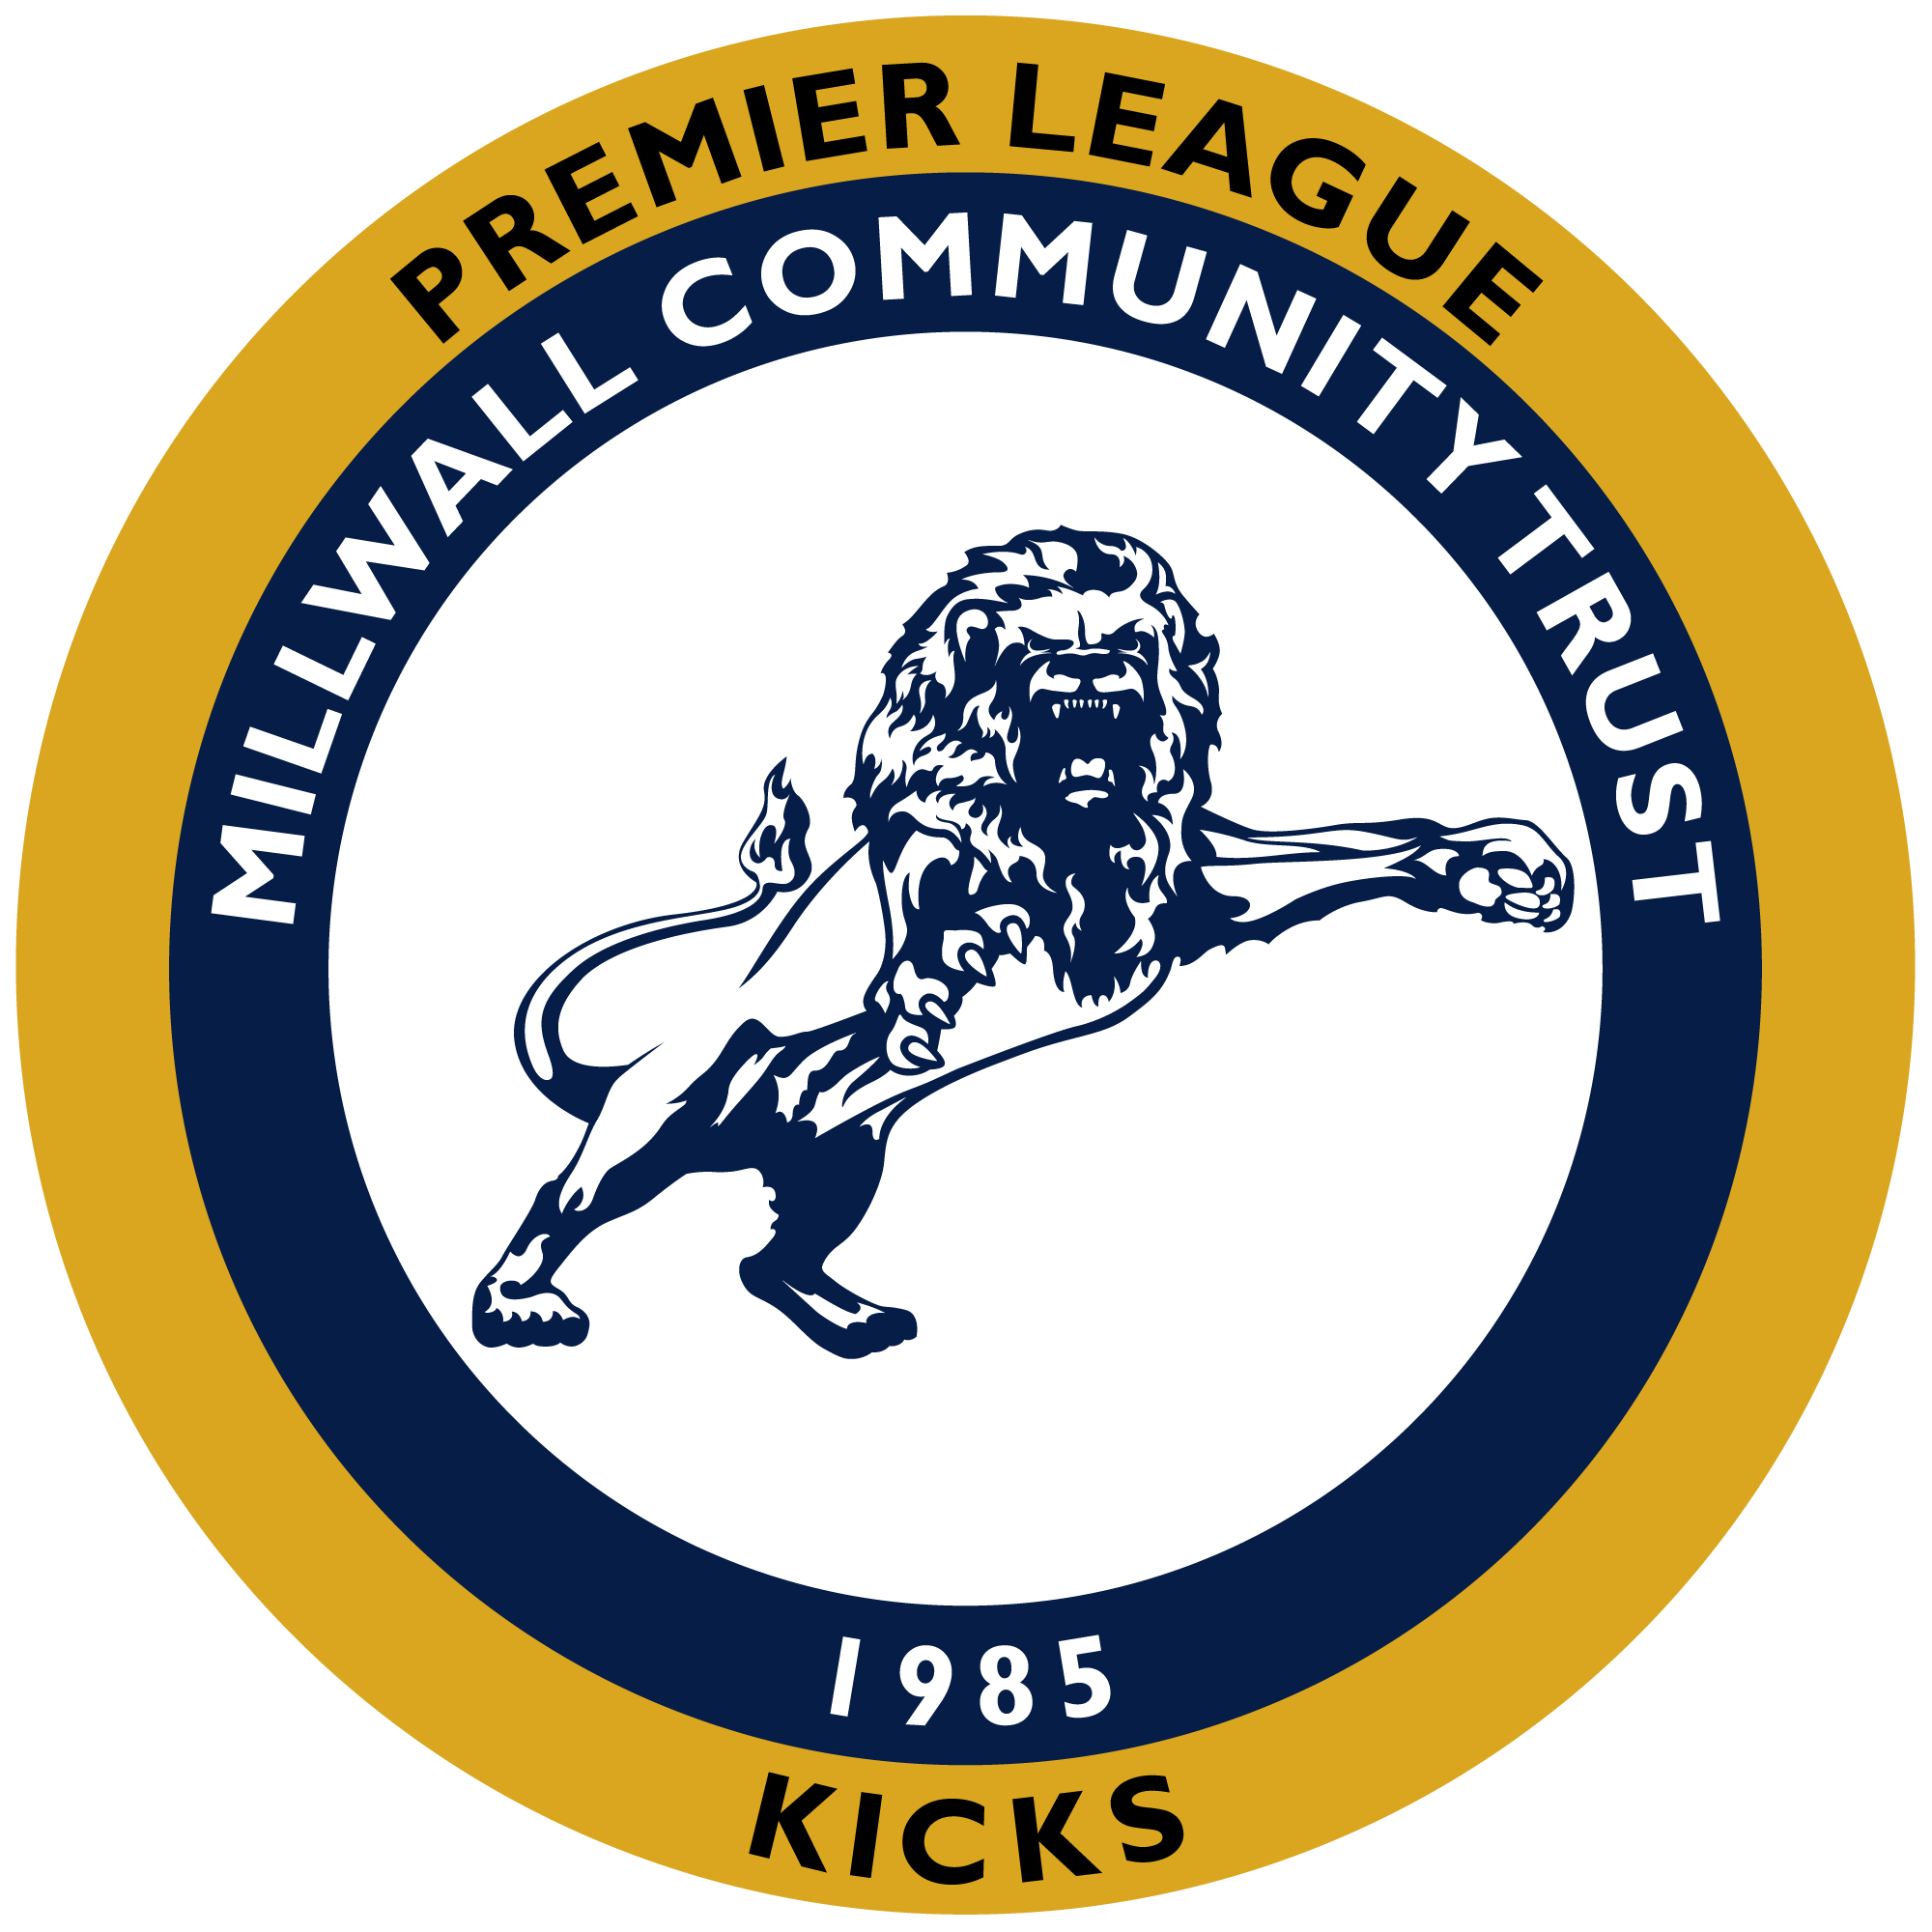 Millwall Community Trust - Millwall PL Kicks Returns